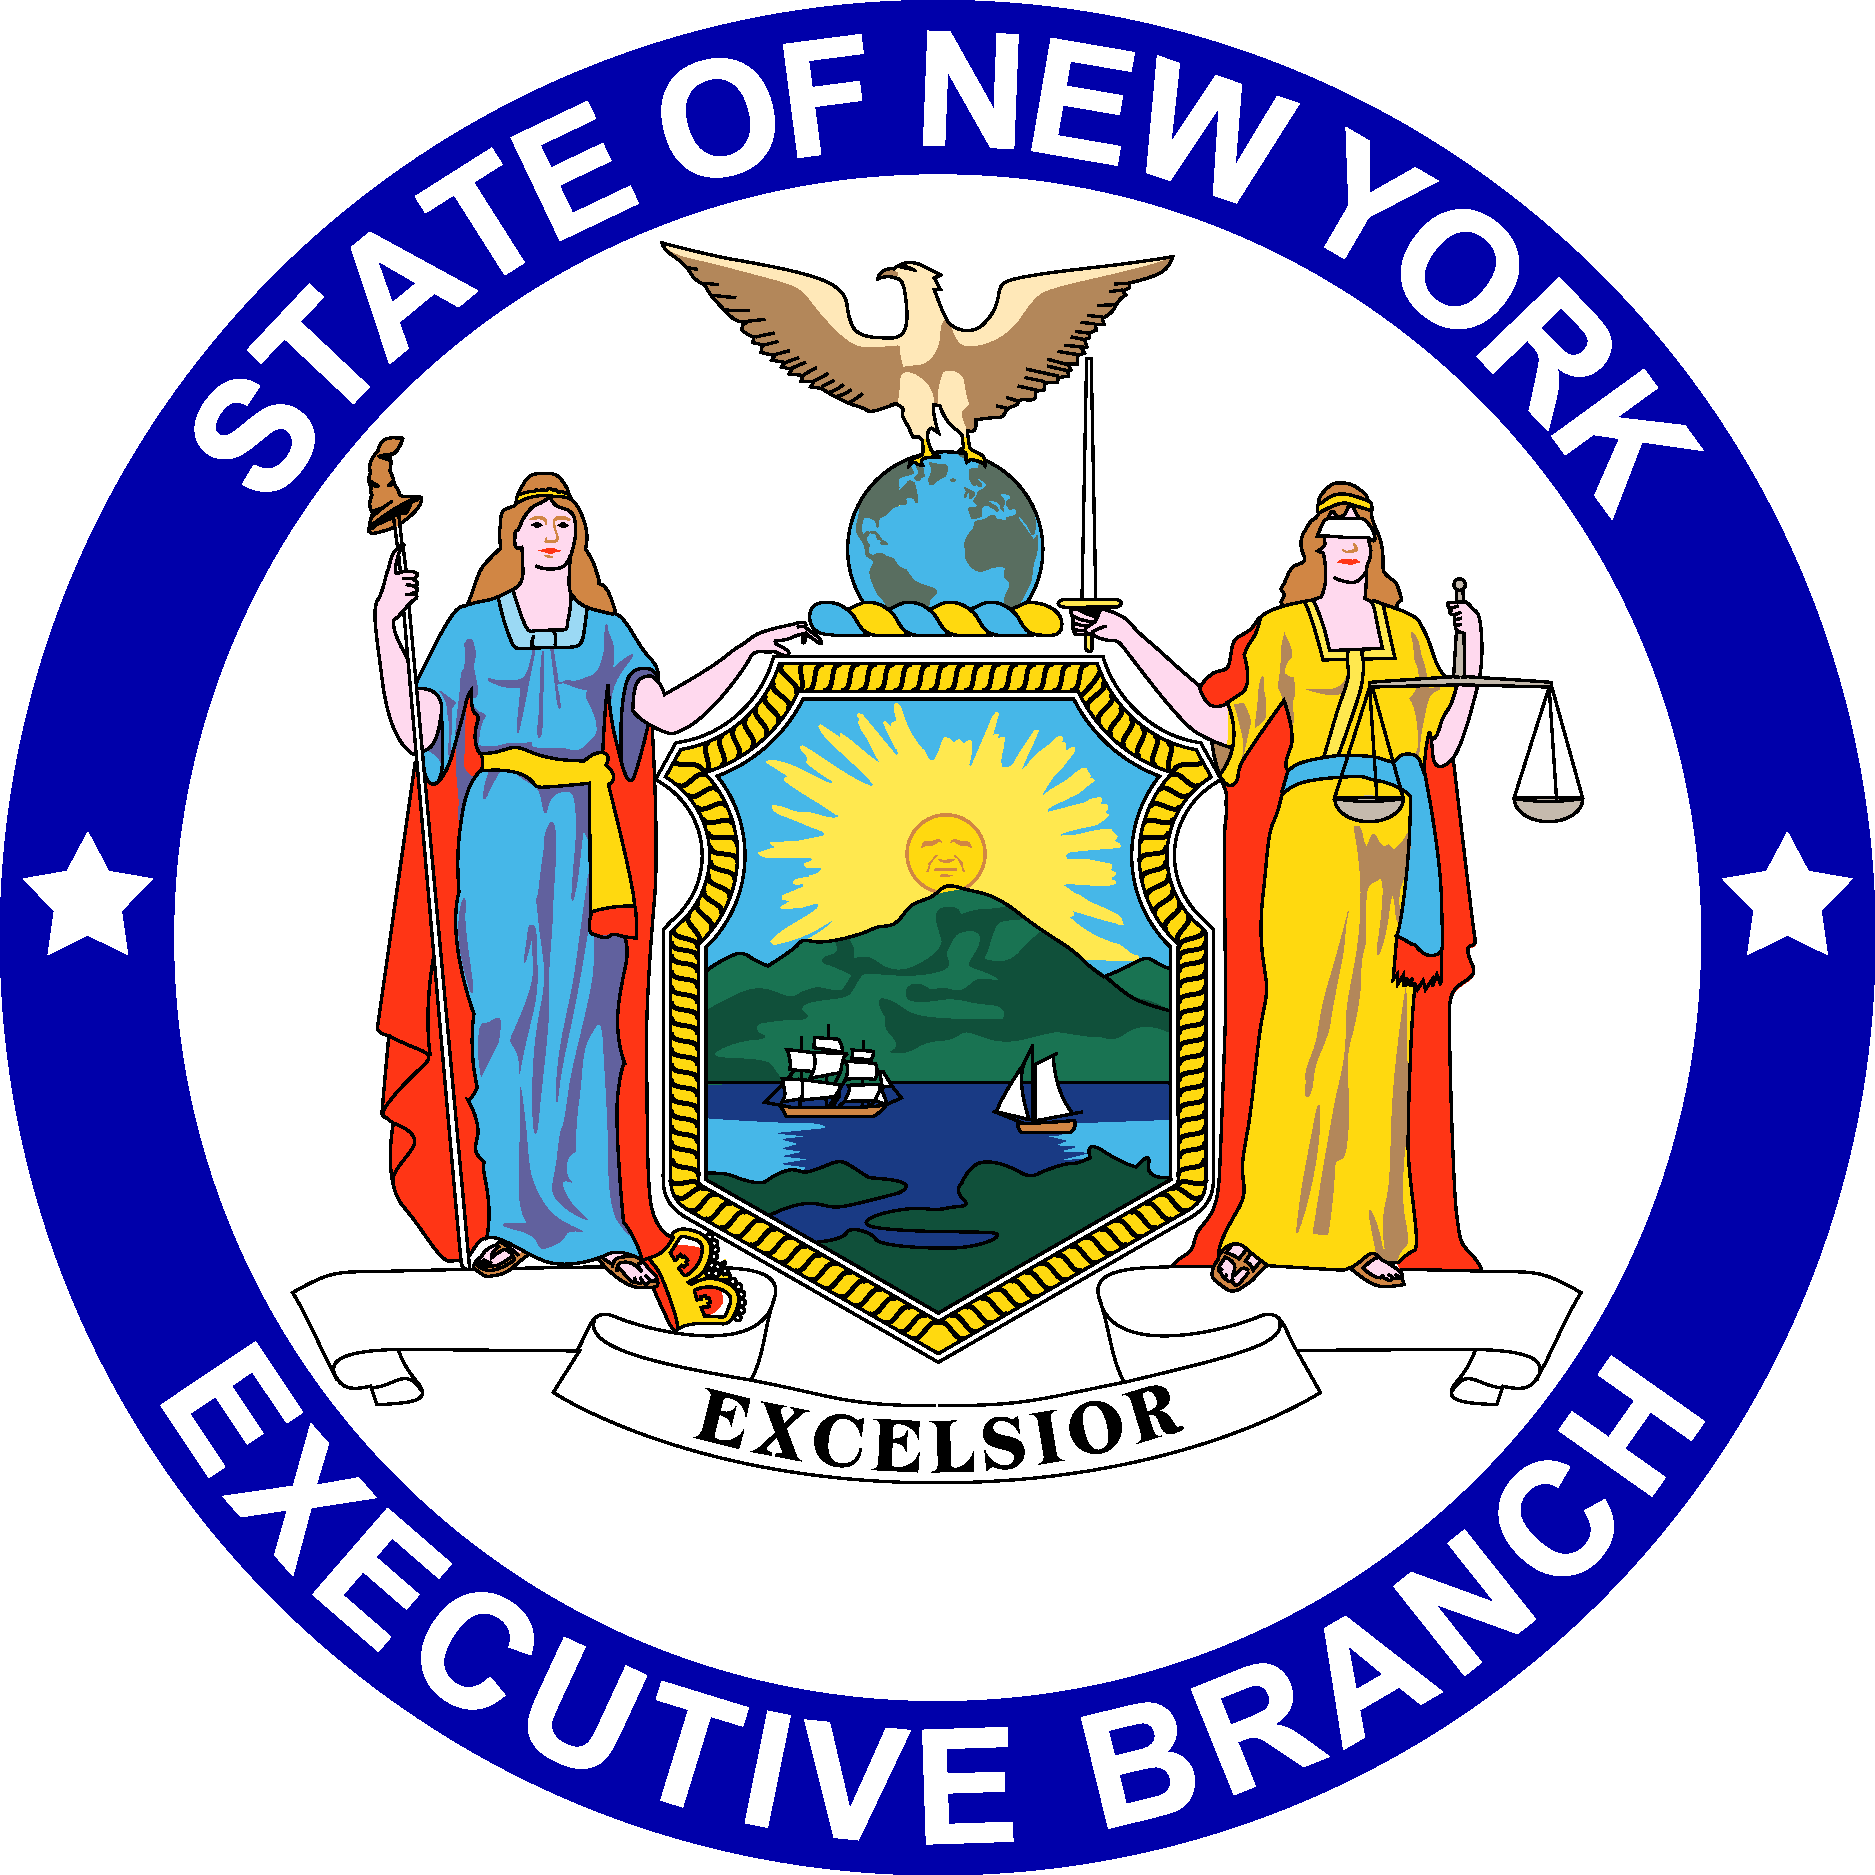 Executive Branch of New York Logo Vector